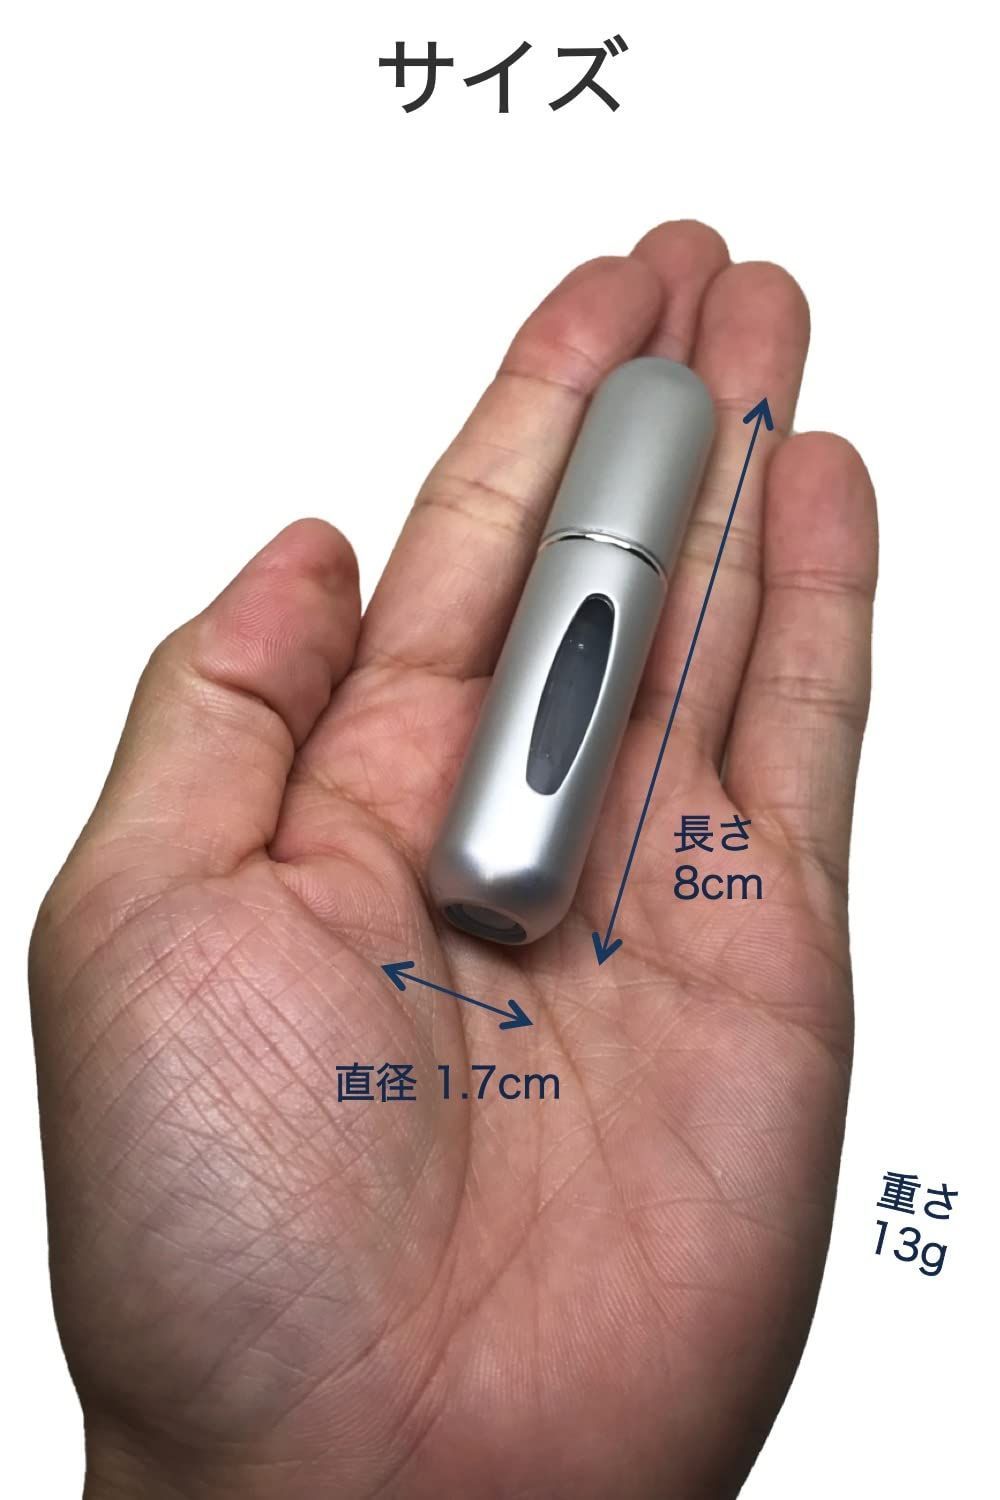 香水 アトマイザー ノズル 5ml スプレー 詰め替え ボトル 携帯 シルバー